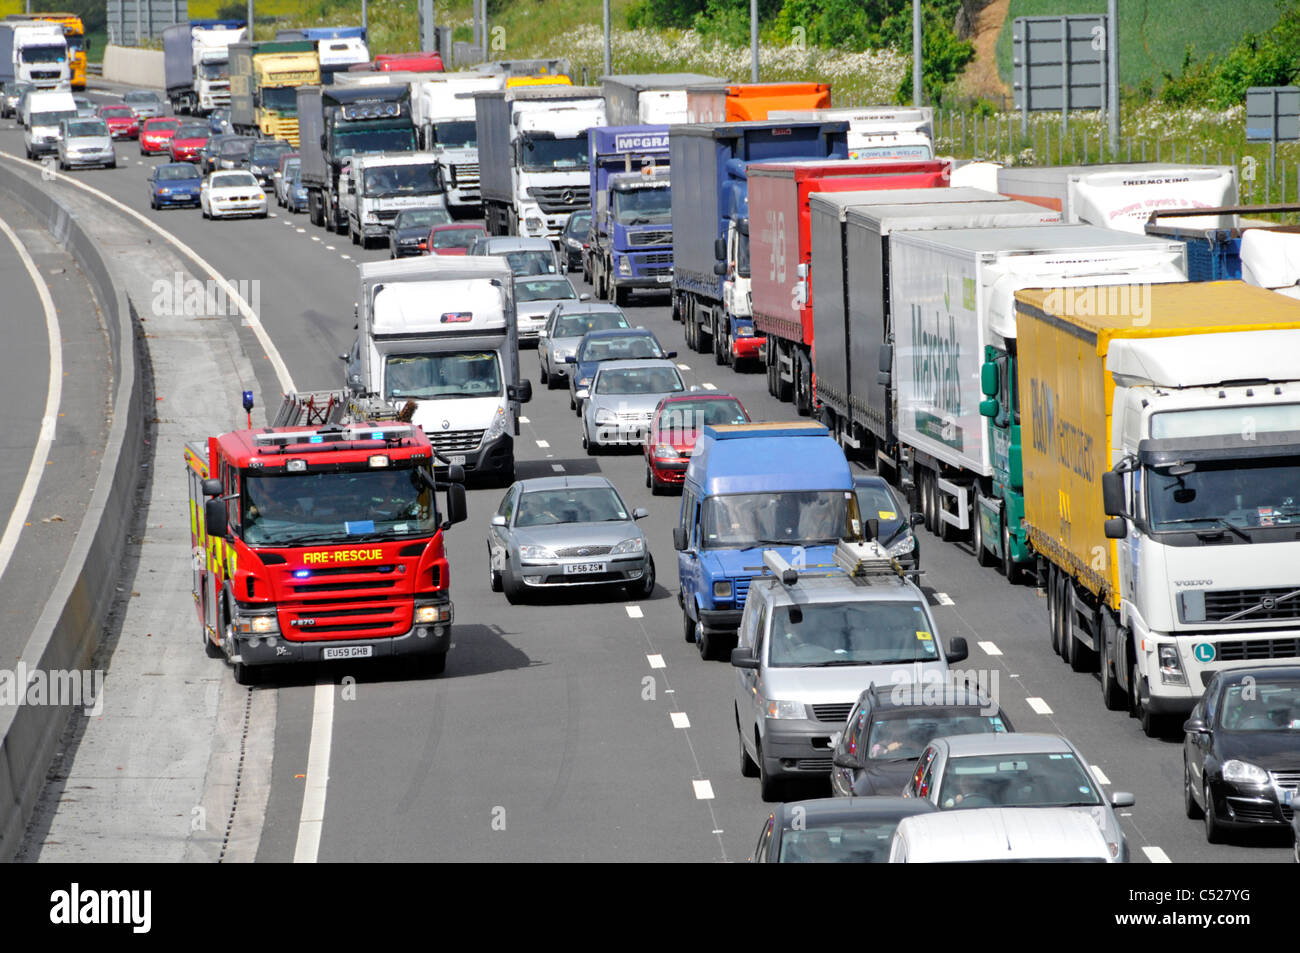 Feuerwehrauto M25 Autobahn auf Notruf zu verhandeln Warteschlangen Verkehr Verkehrsunfall Stockfoto